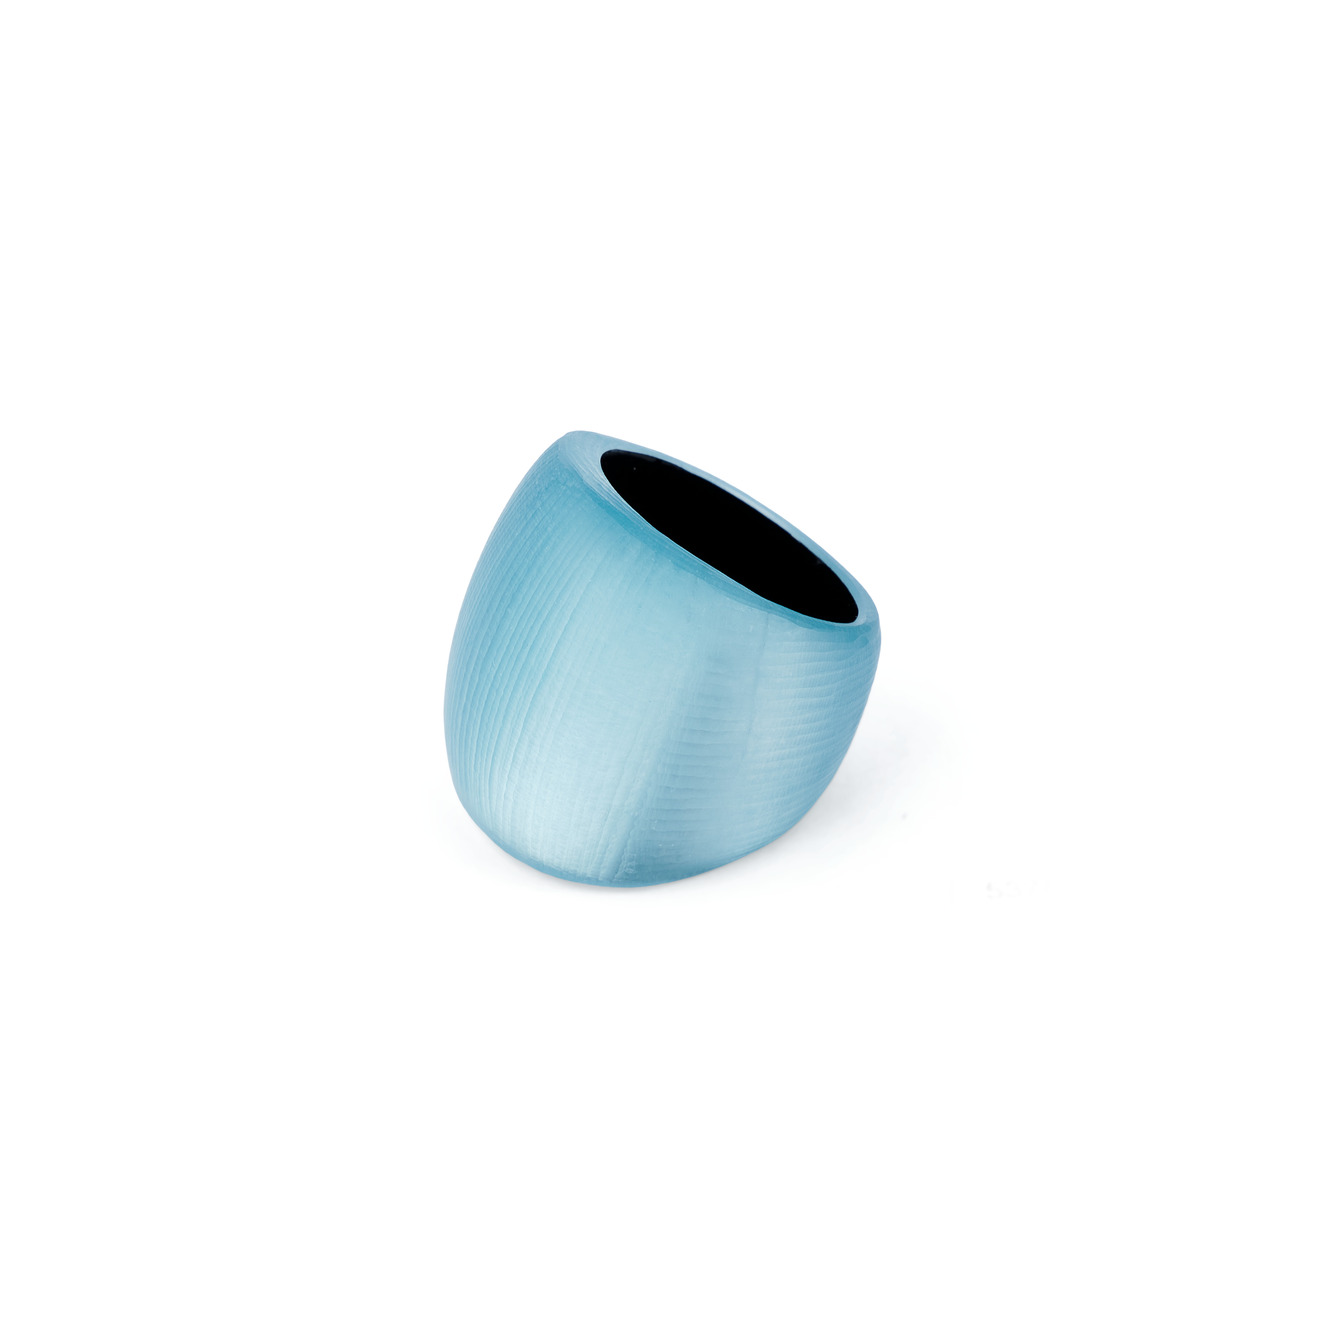 Alexis Bittar Объемное перламутрово-голубое кольцо из люцита